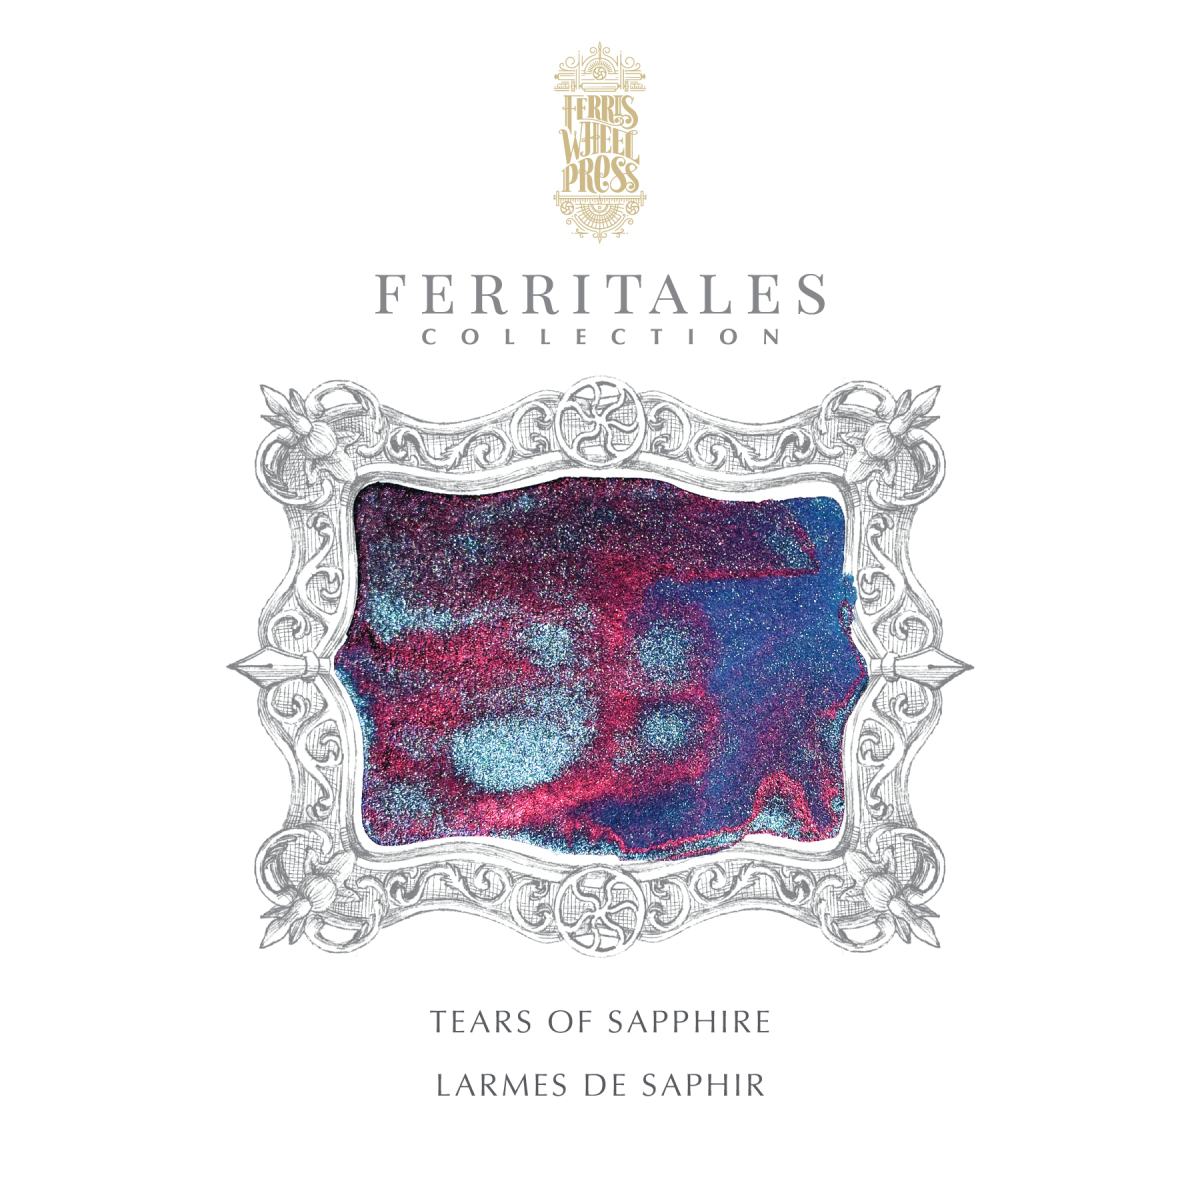 Ferris Wheel Press - Ferritales Ink - Tears of Sapphire